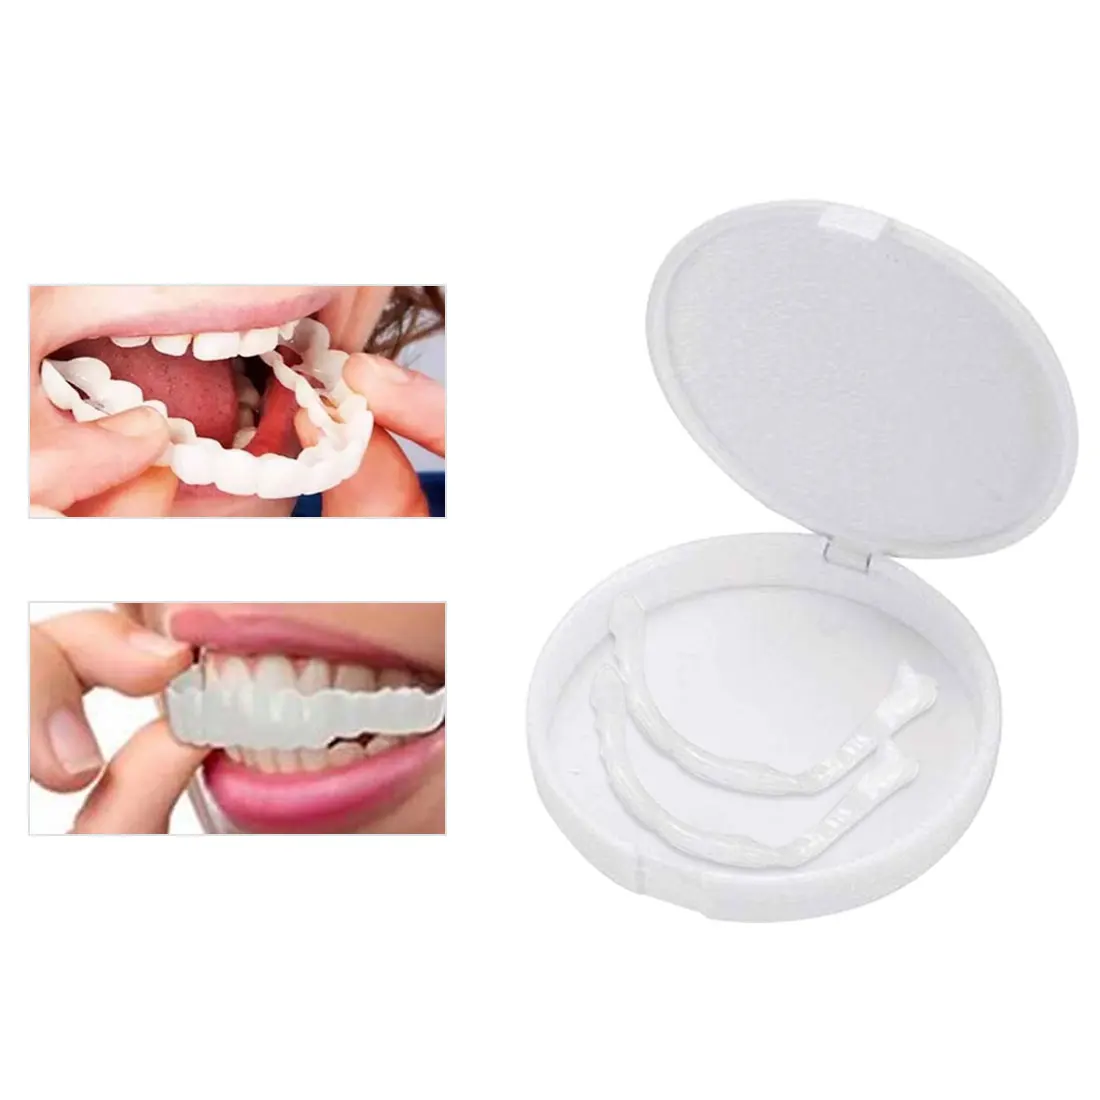 1 пара силиконовых покрытий для зубов, ночная Защита рта для зубов, шлифовальный стоматологический инструмент для укуса и сна, отбеливающий поднос для зубов